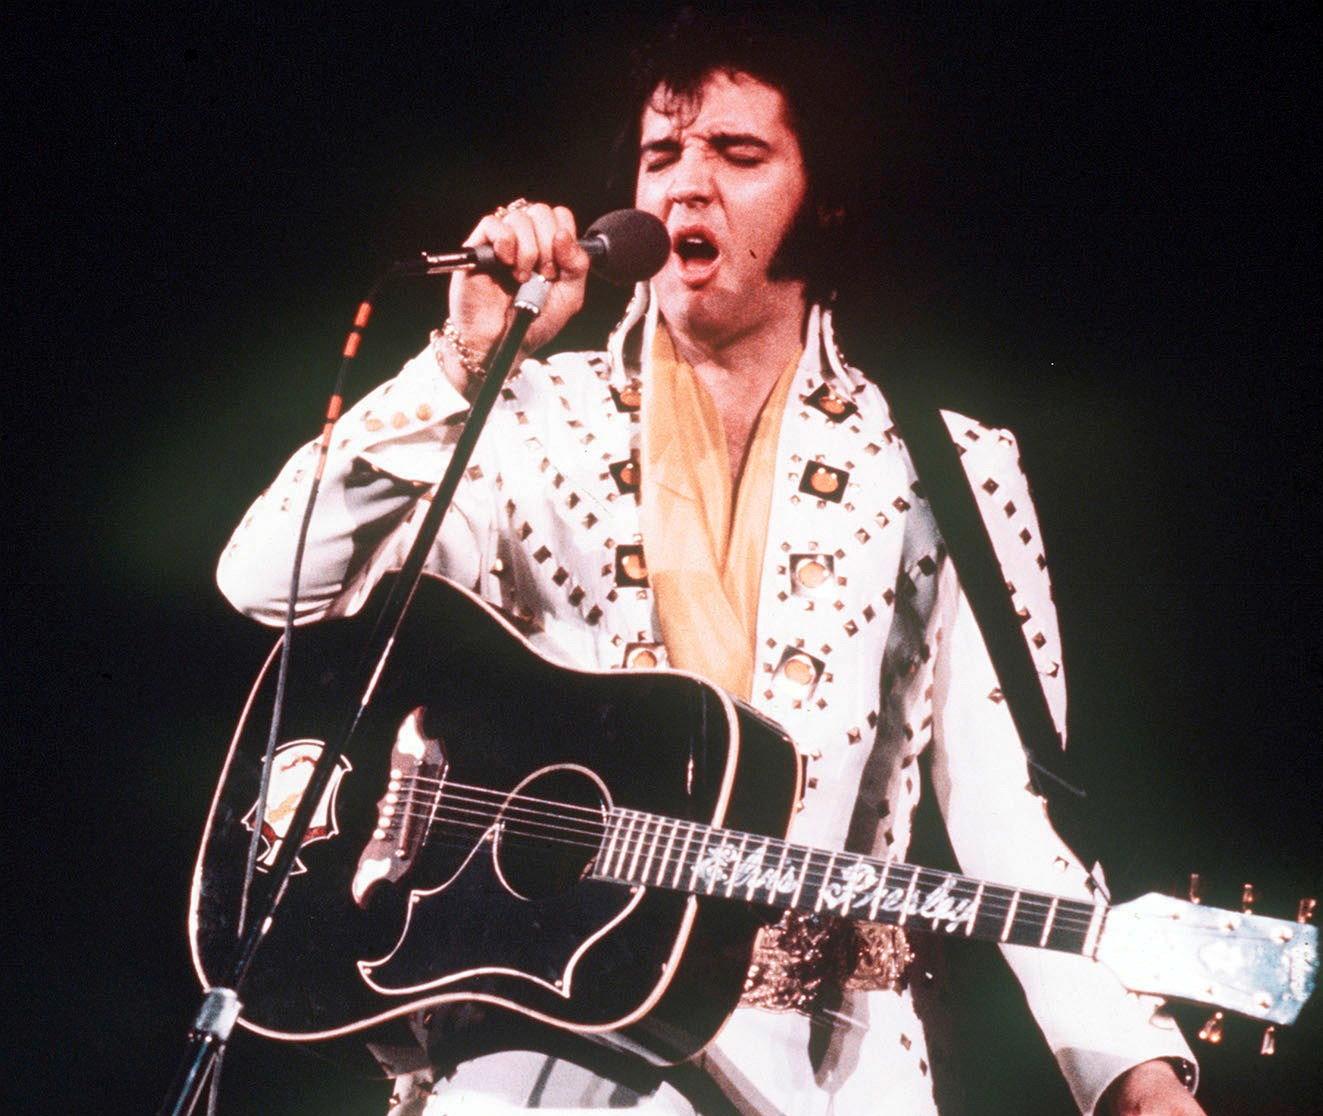 Elvis Presley återuppstår som digital kopia i konserten "Elvis evolution". Arkivbild.